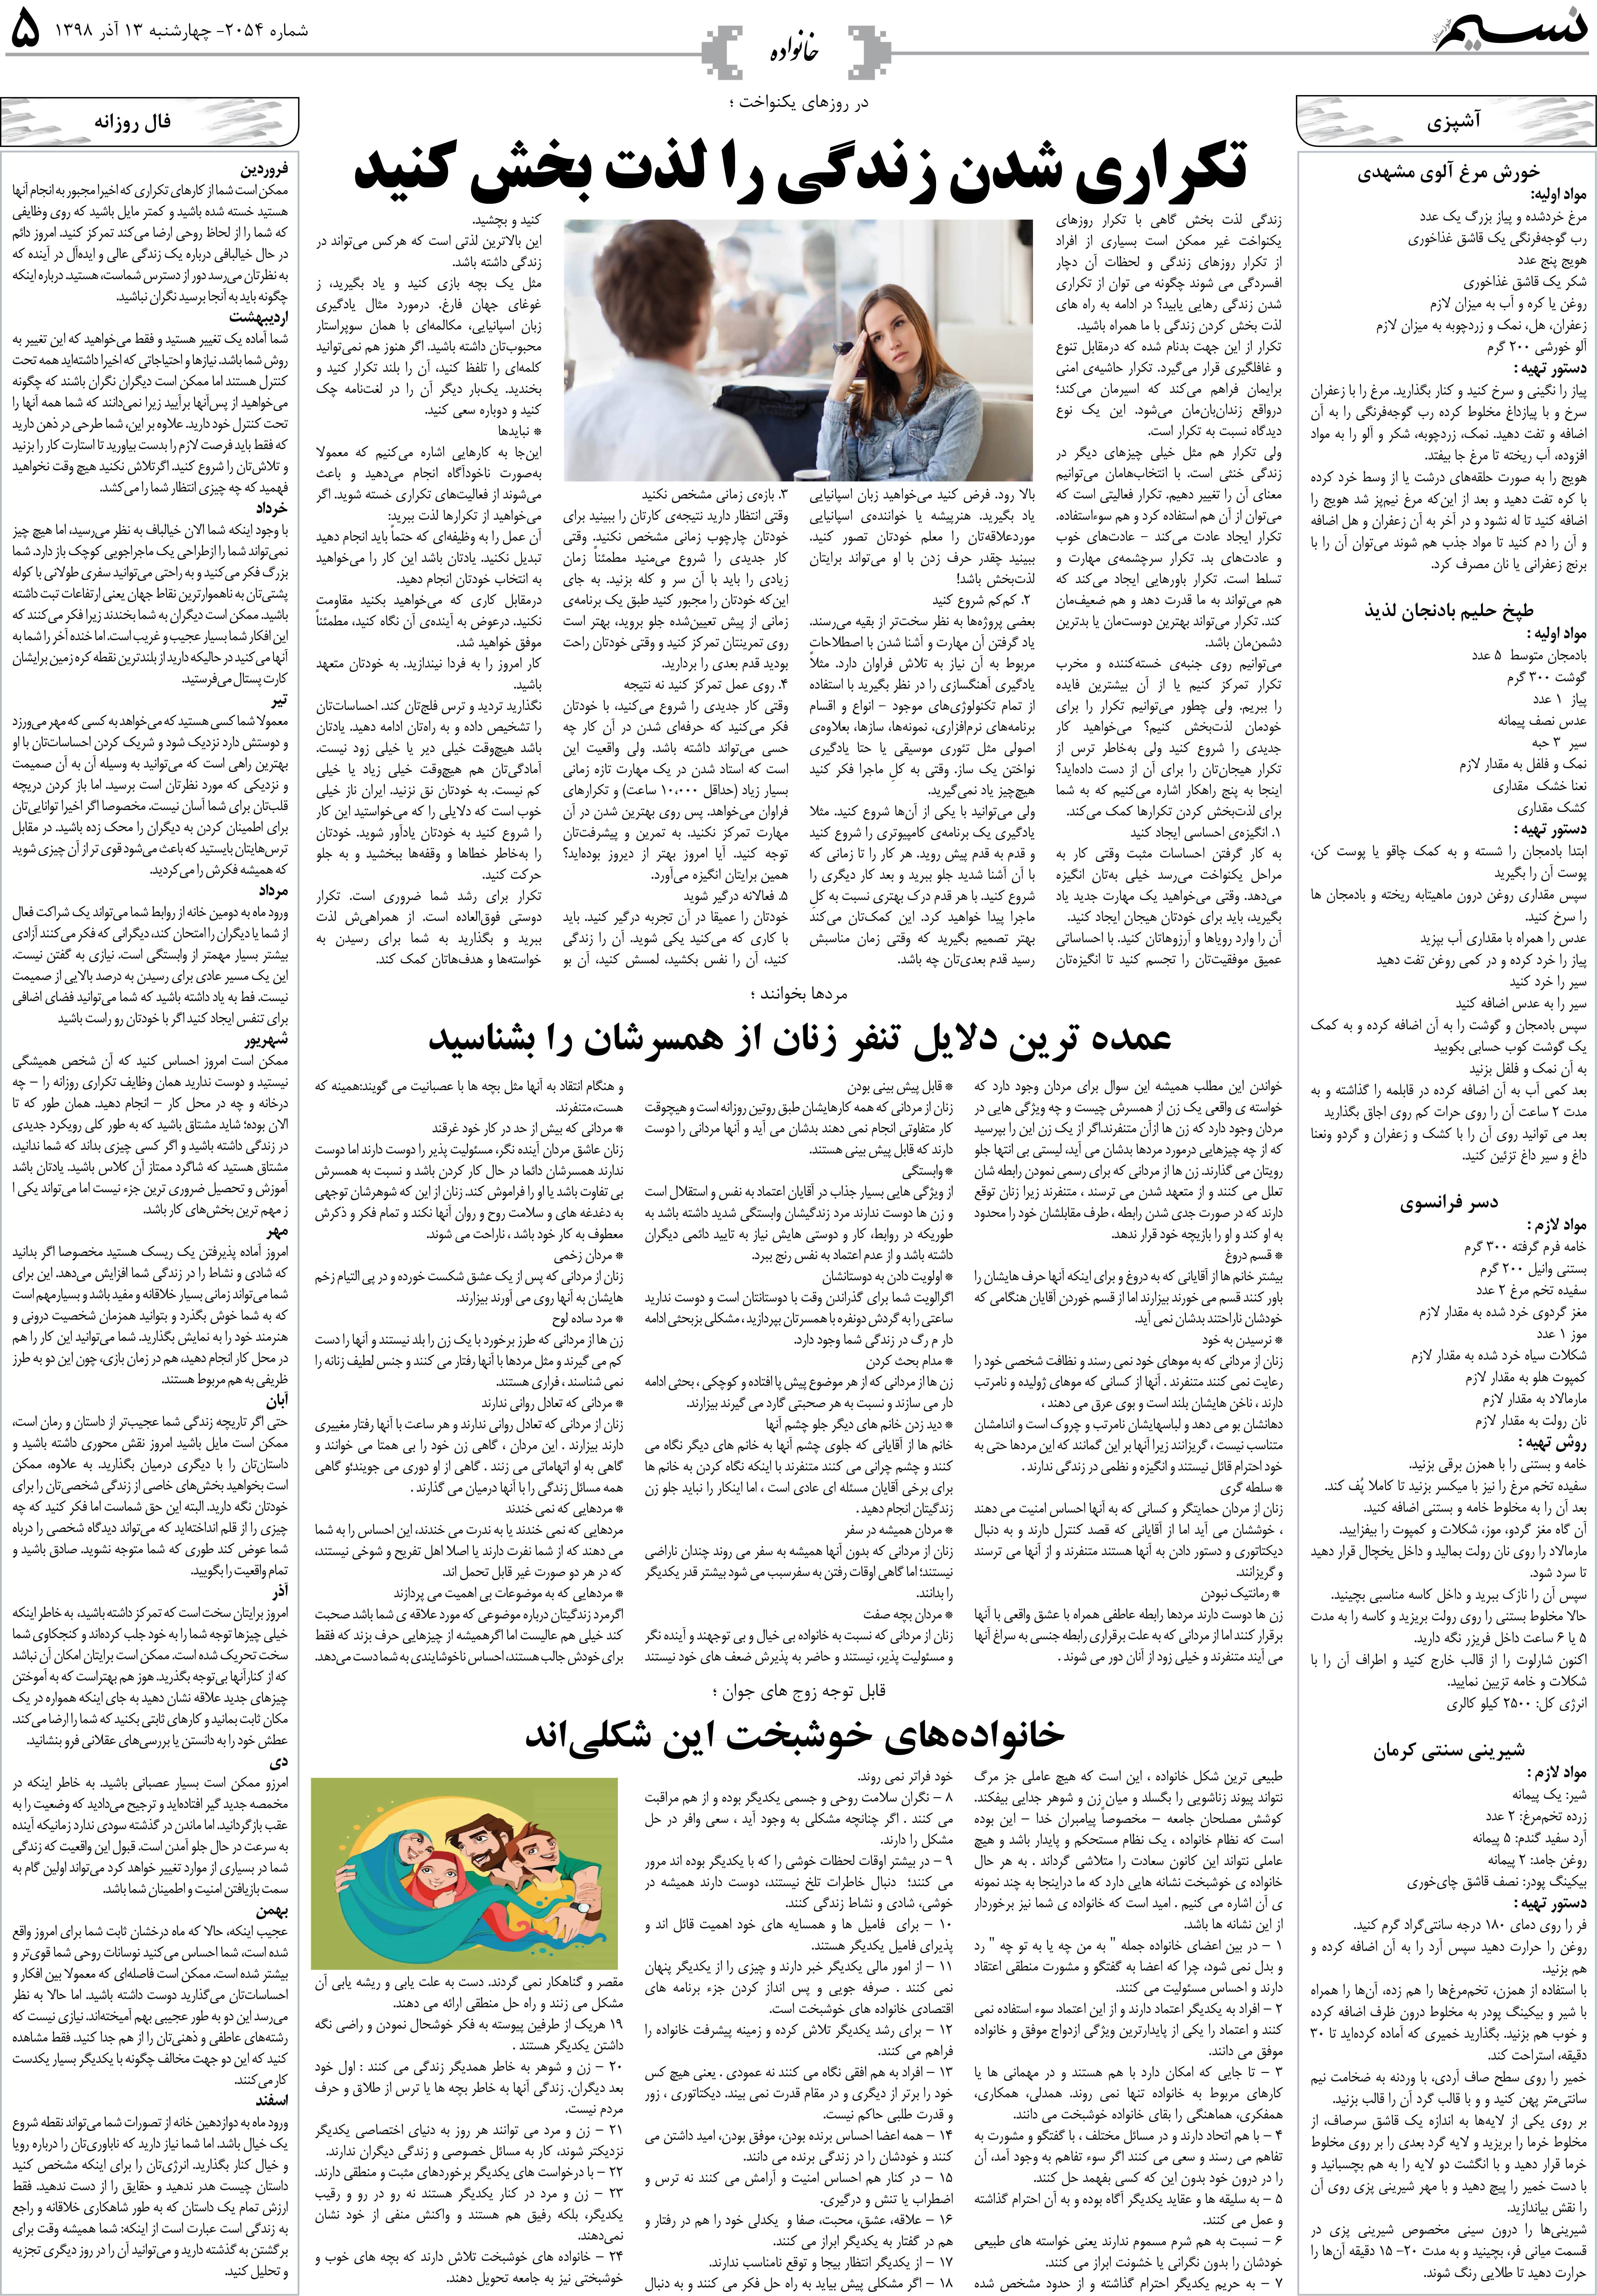 صفحه خانواده روزنامه نسیم شماره 2054